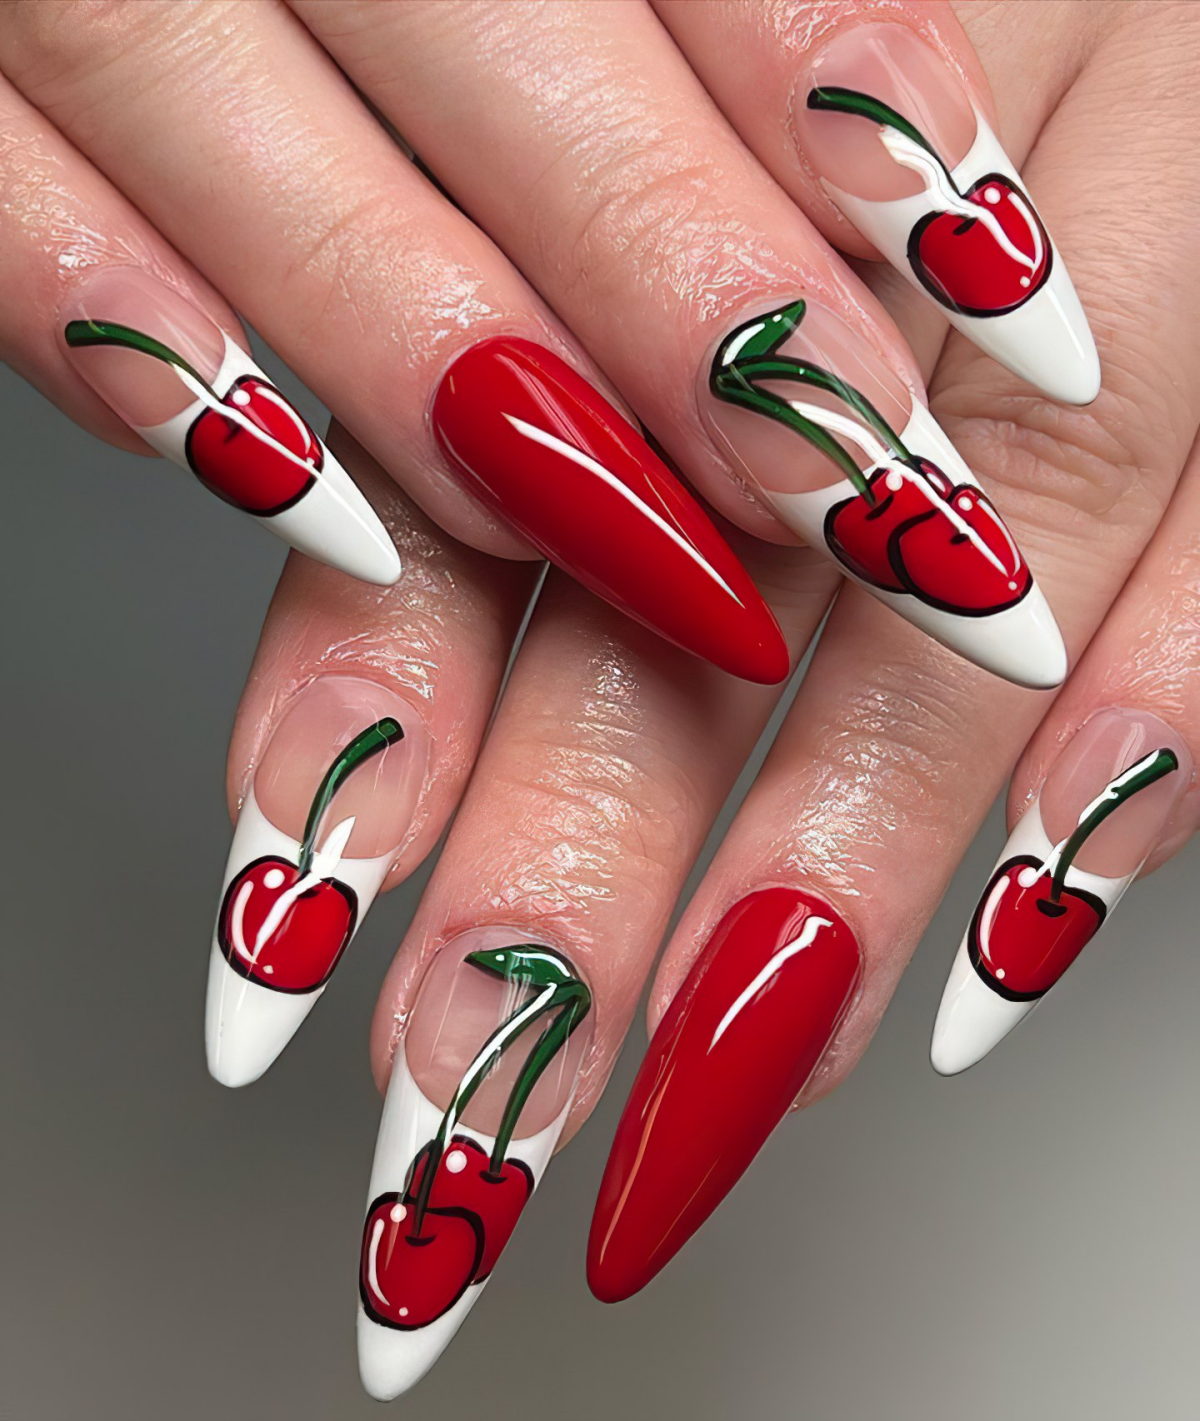 cherry nails handittoheathe